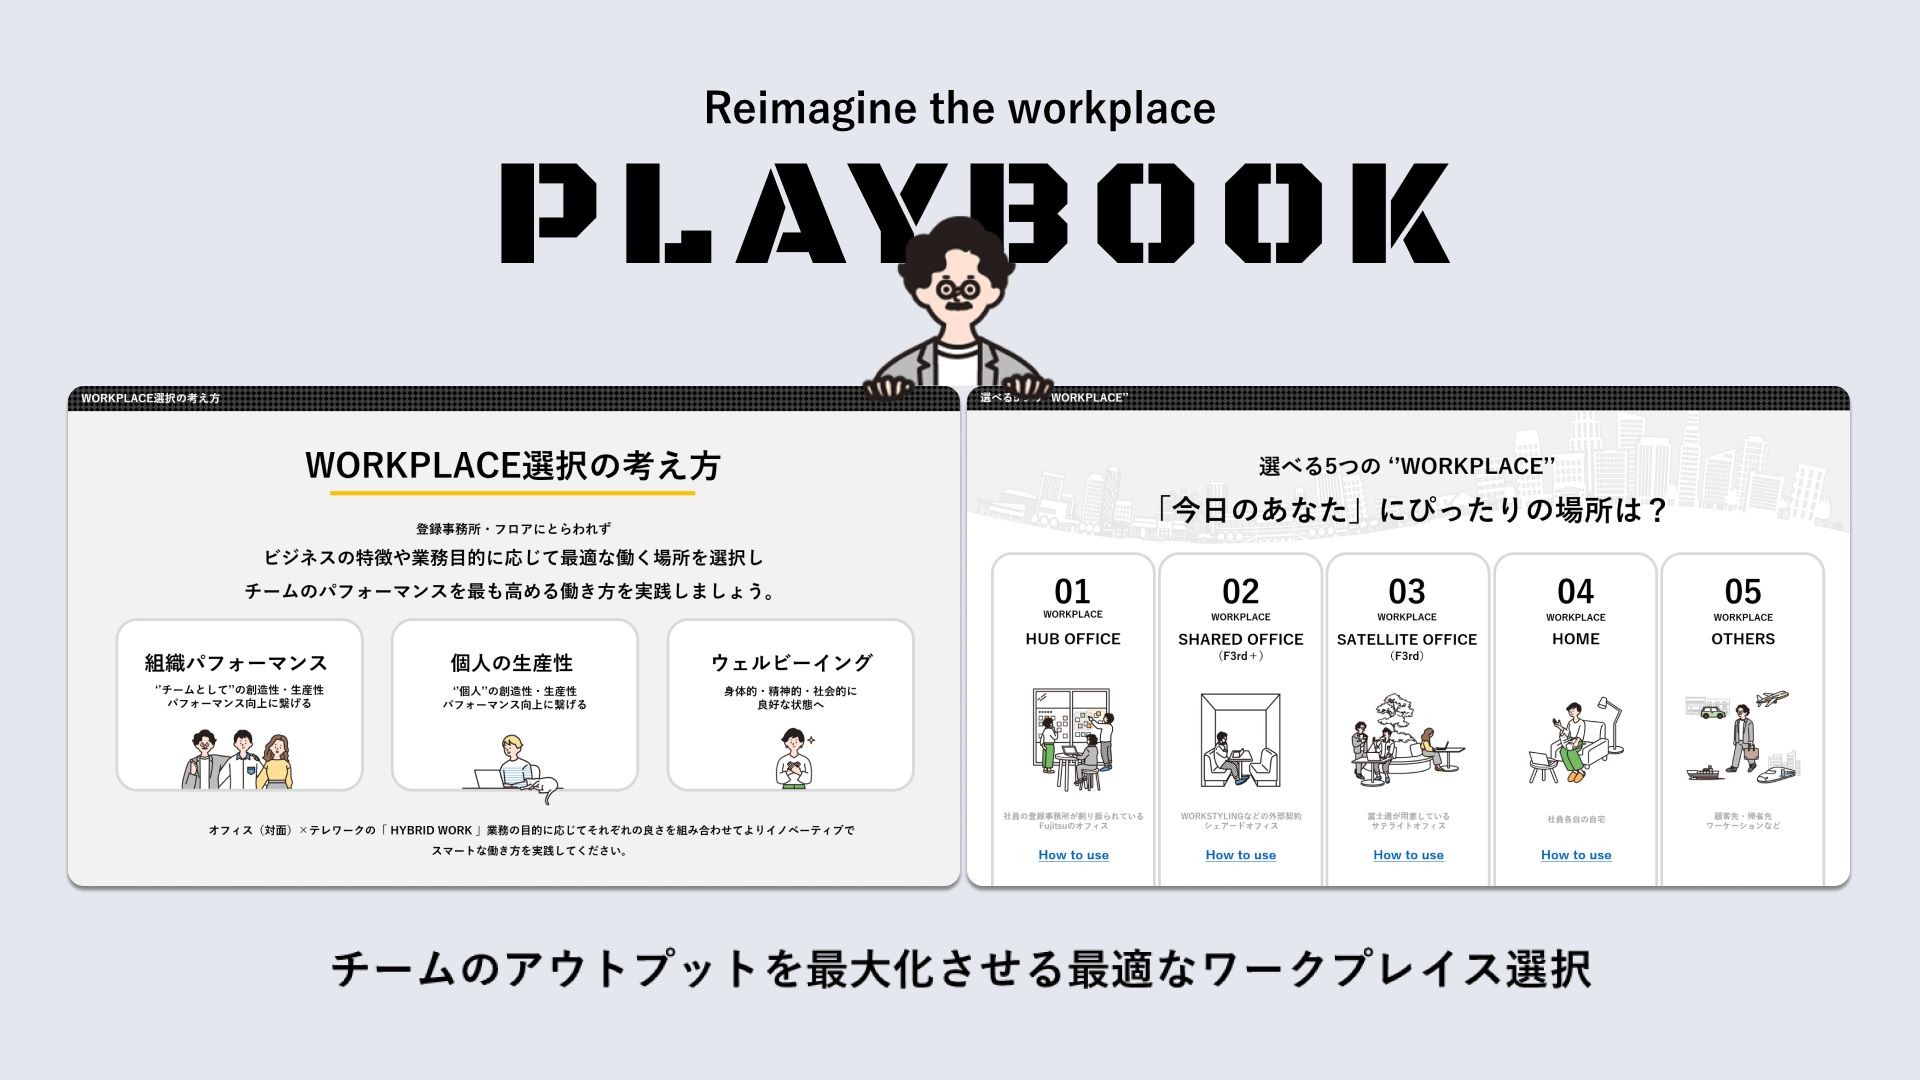 木内さんが情報設計、ライティング、トンマナなどのデザインを担当した富士通全社に配布されるルールブック「PLAYBOOK」。